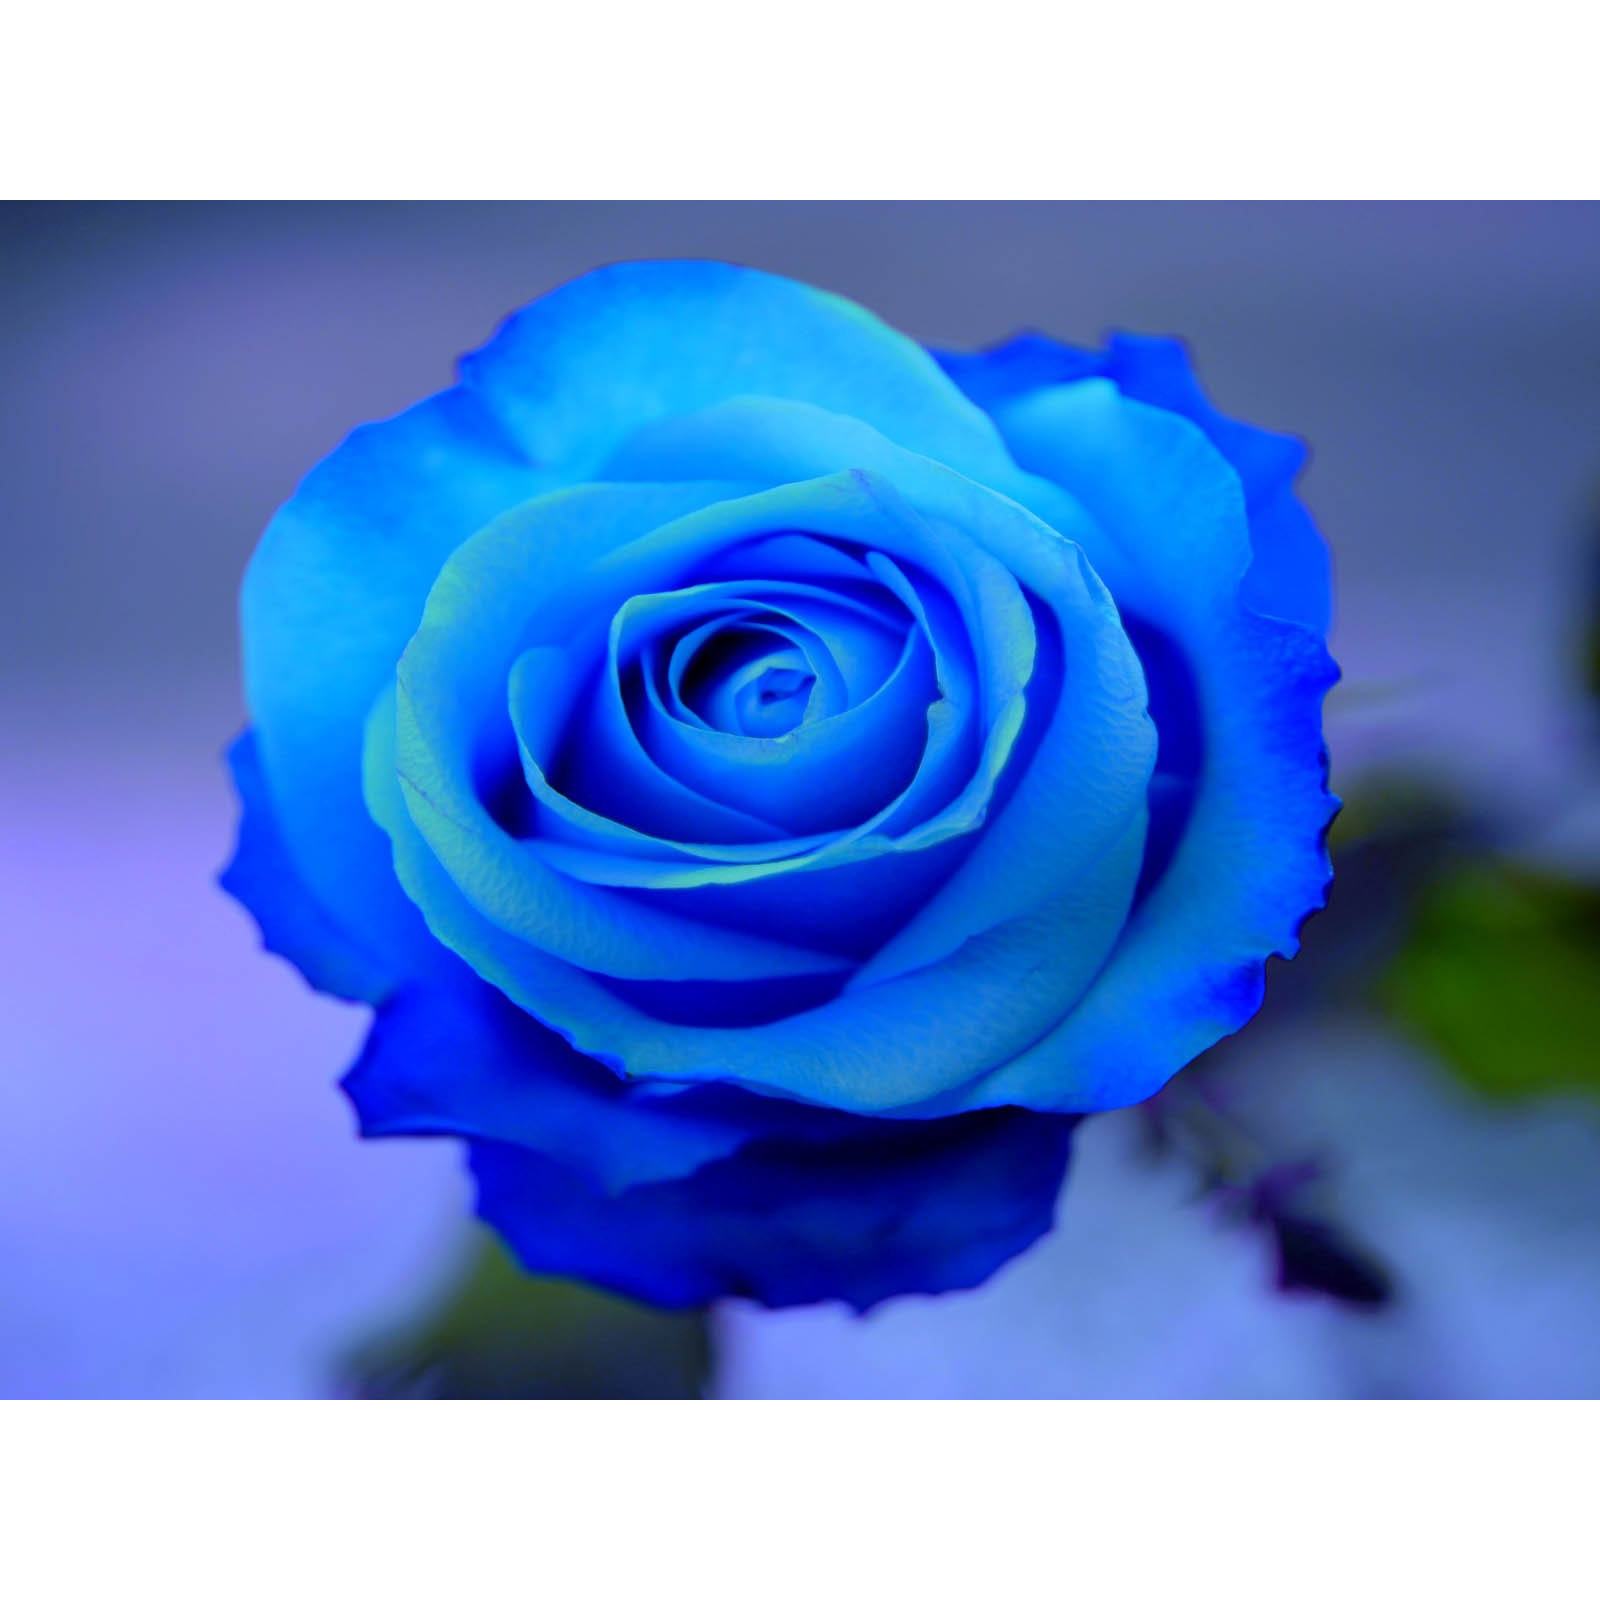 Hình ảnh hoa hồng xanh tươi sáng